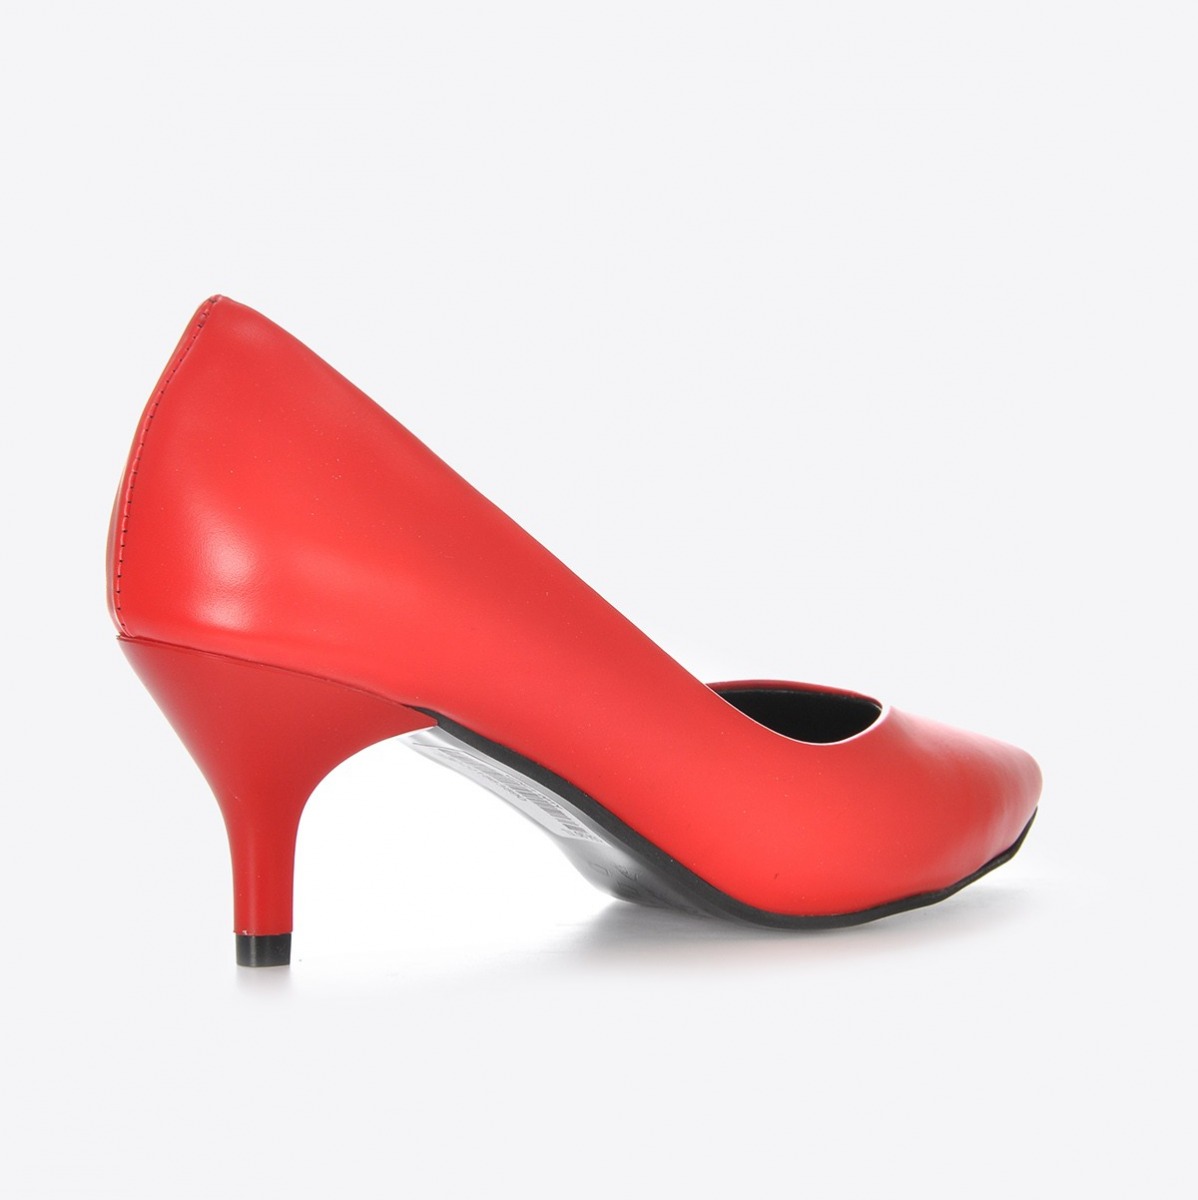 Flo Kadın Kırmızı Klasik Topuklu Ayakkabı VZN21-001Y. 4